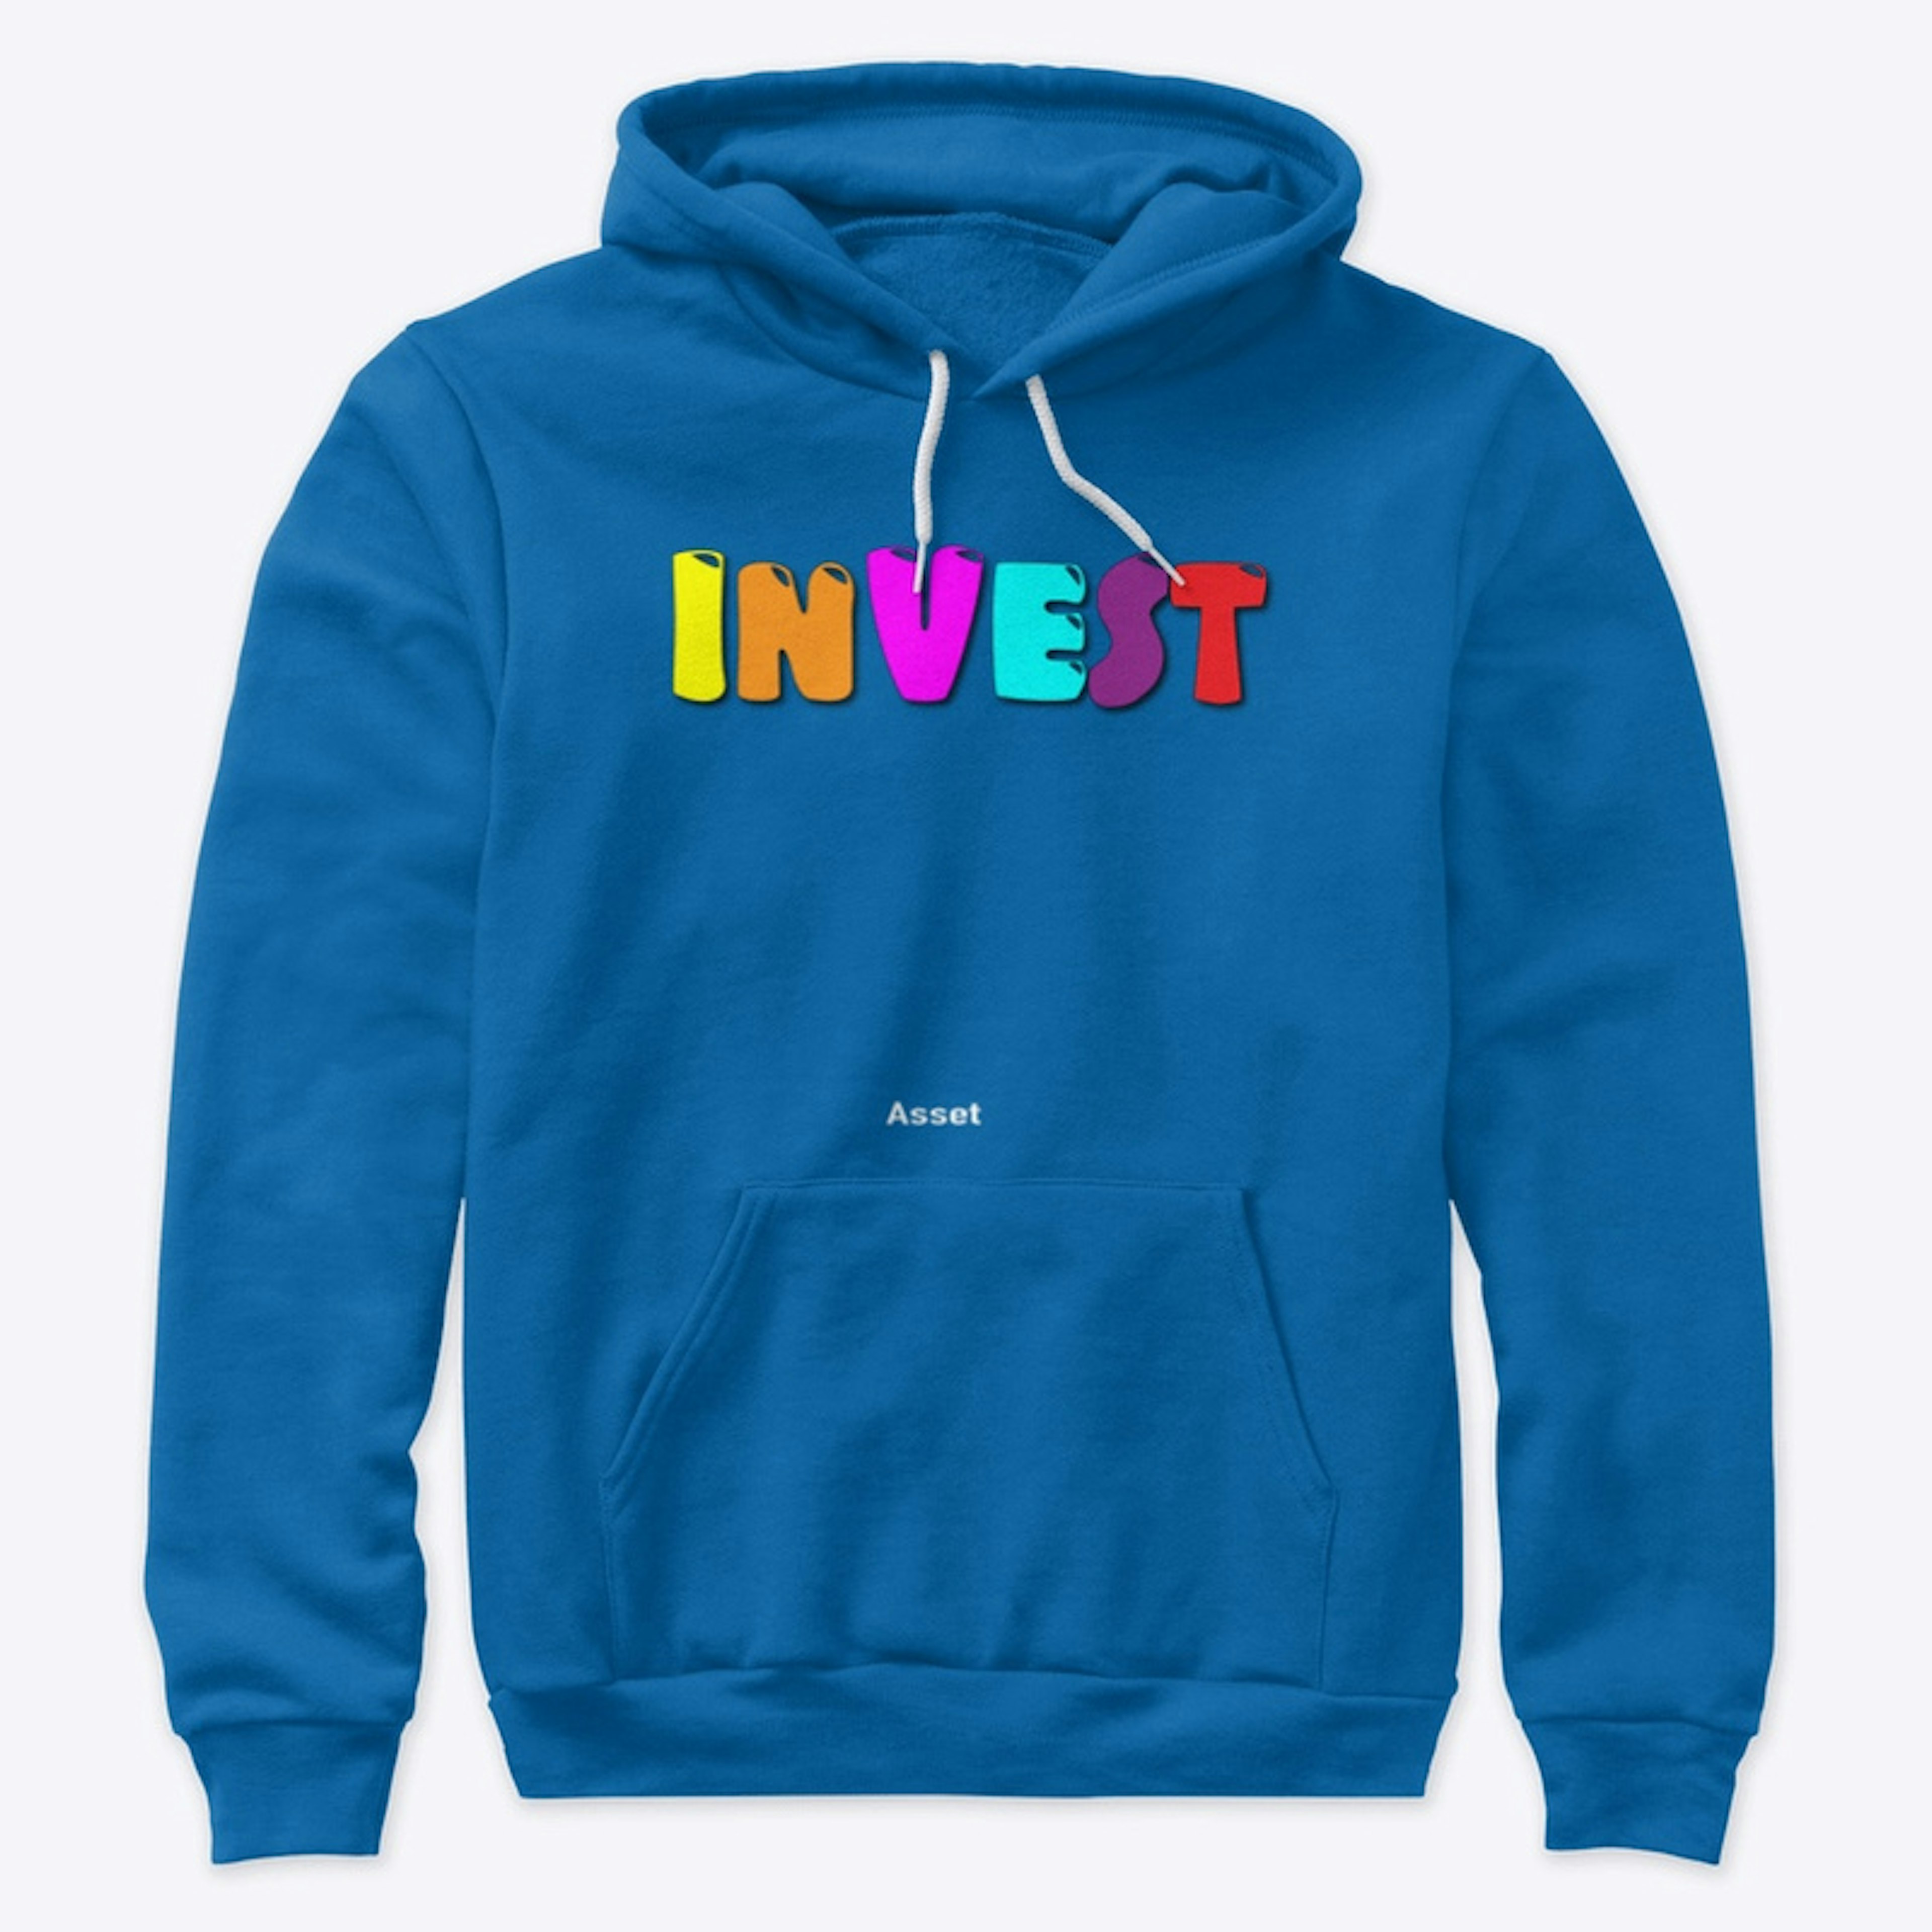 Invest - Asset T-Shirt 